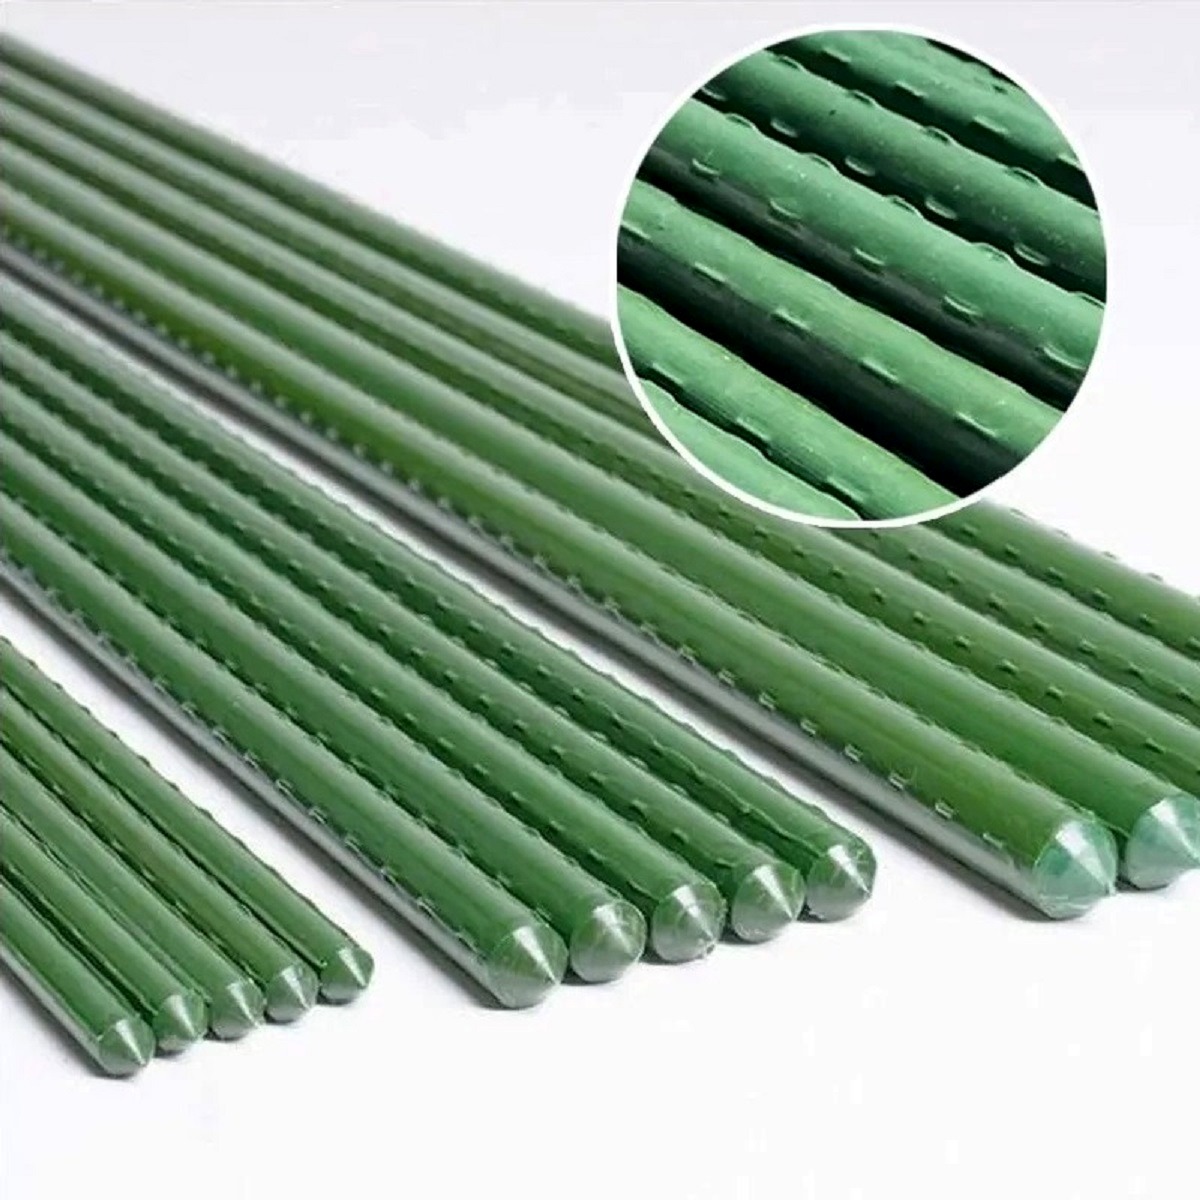 Металева опора для рослин Agrario 11-180 з пластиковим покриттям 11 мм х 1,8 м / Аграріо 11-180